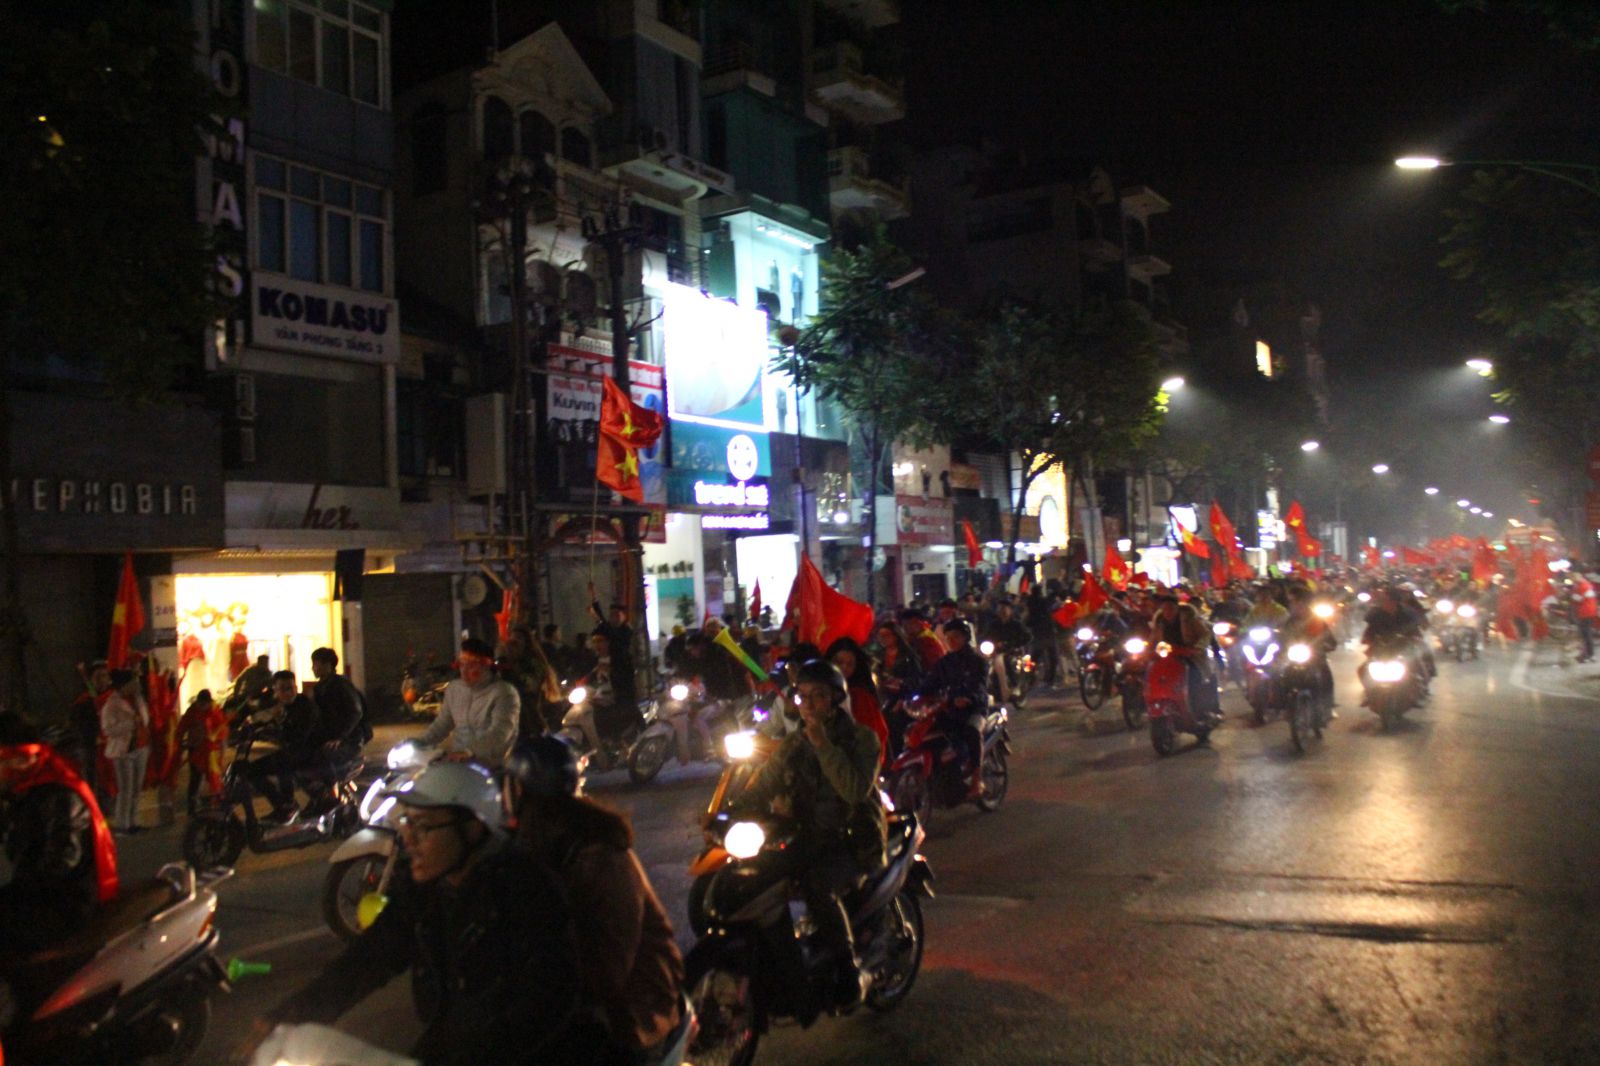 Hàng nghìn người đang đổ về khu vực quận Hoàn Kiếm, tình trạng ùn tắc bắt đầu xuất hiện.